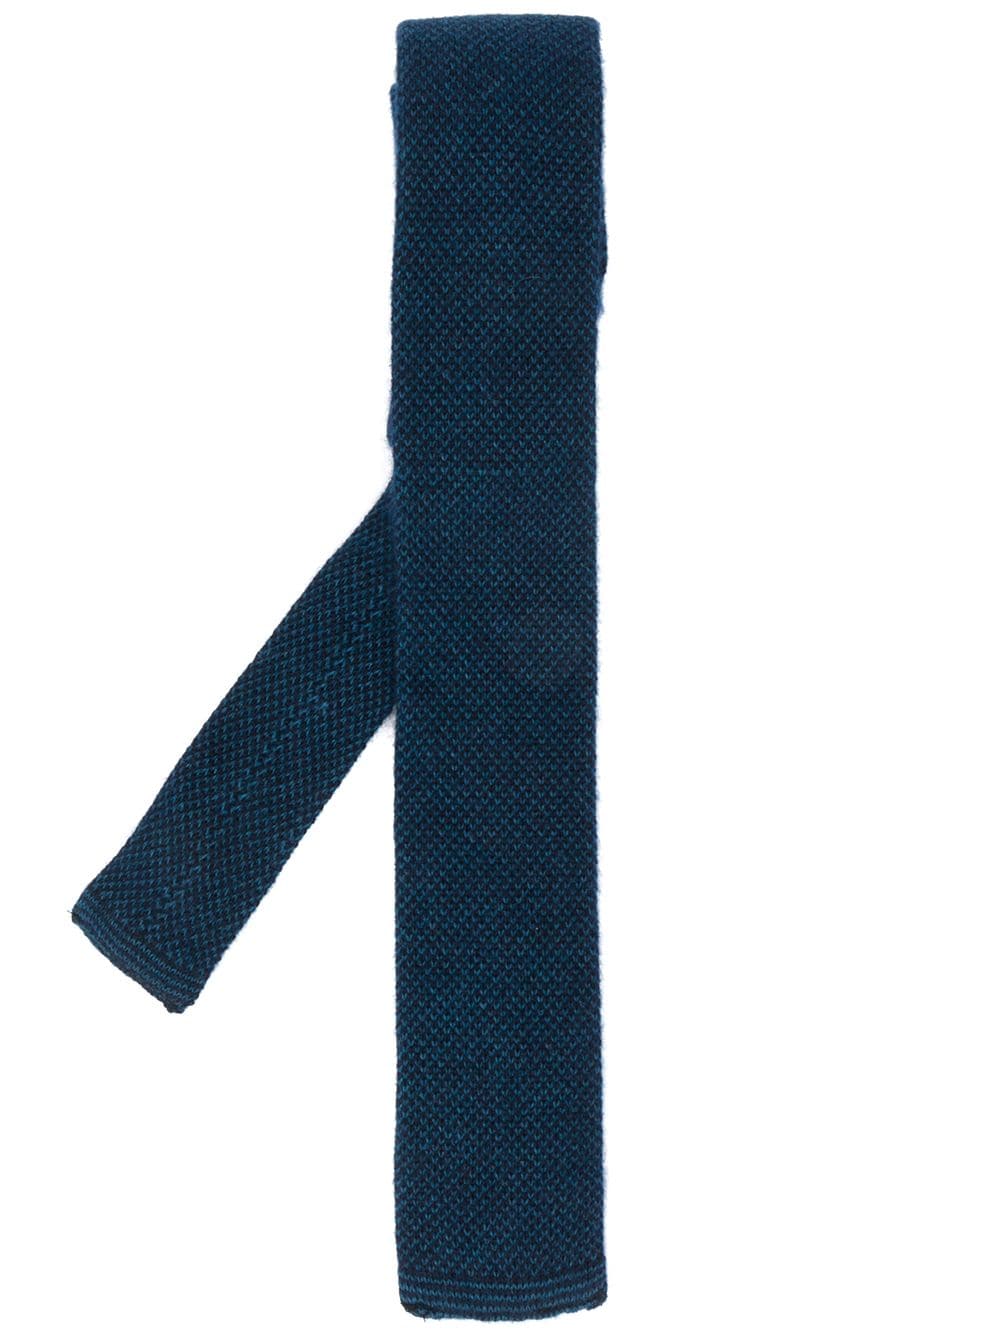 N.Peal Krawatte mit Birdseye-Muster - Blau von N.Peal